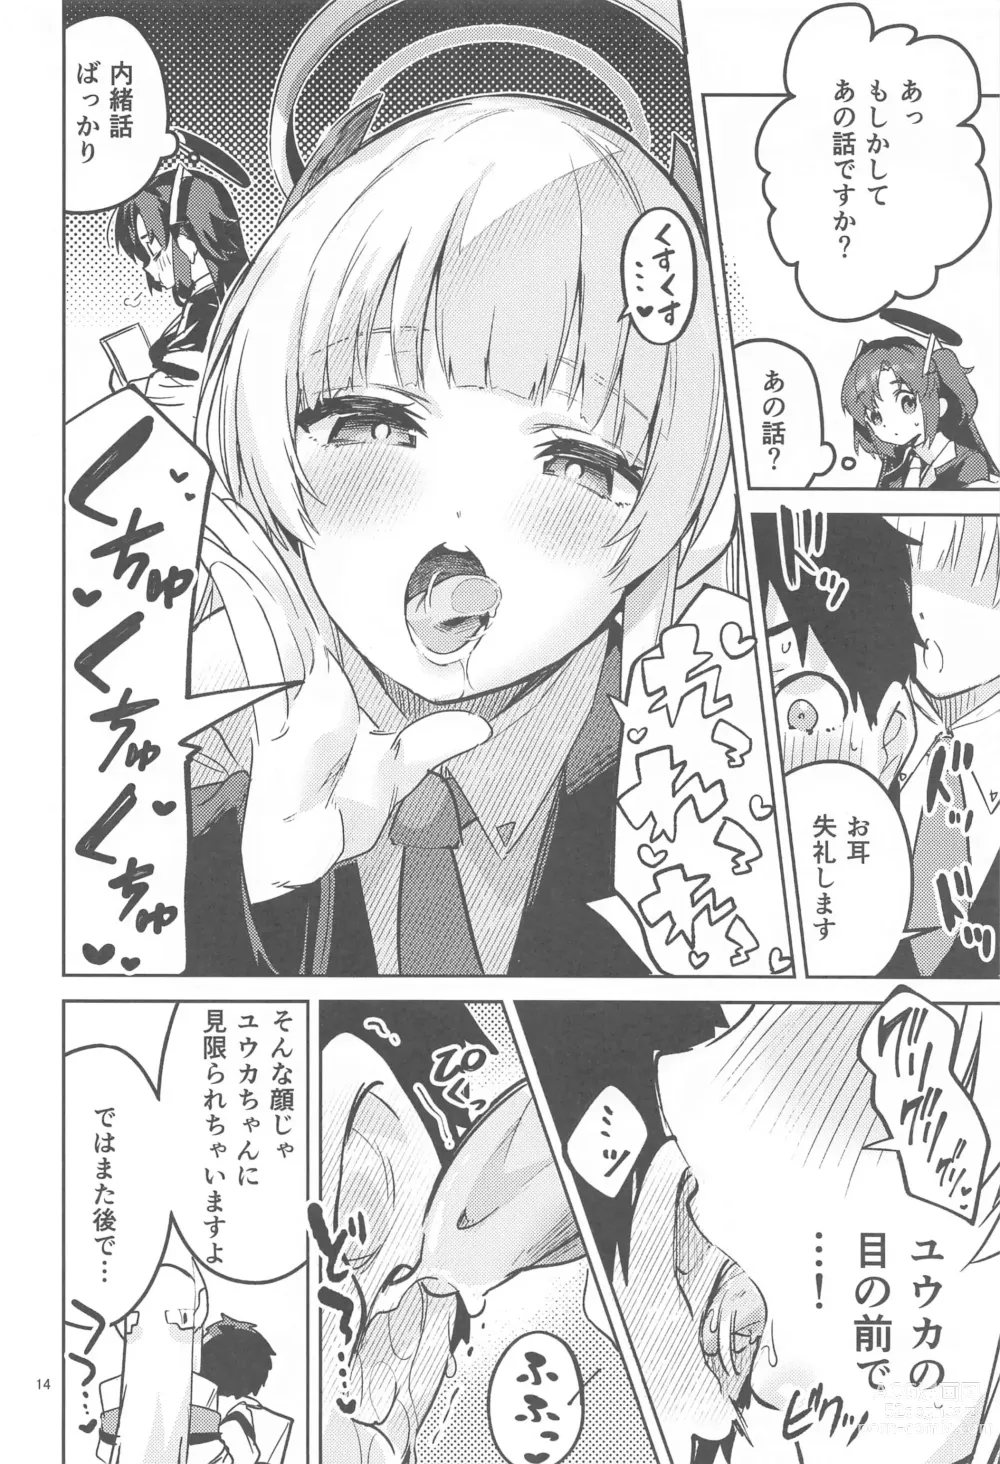 Page 13 of doujinshi Suki o Kazoeru Seito